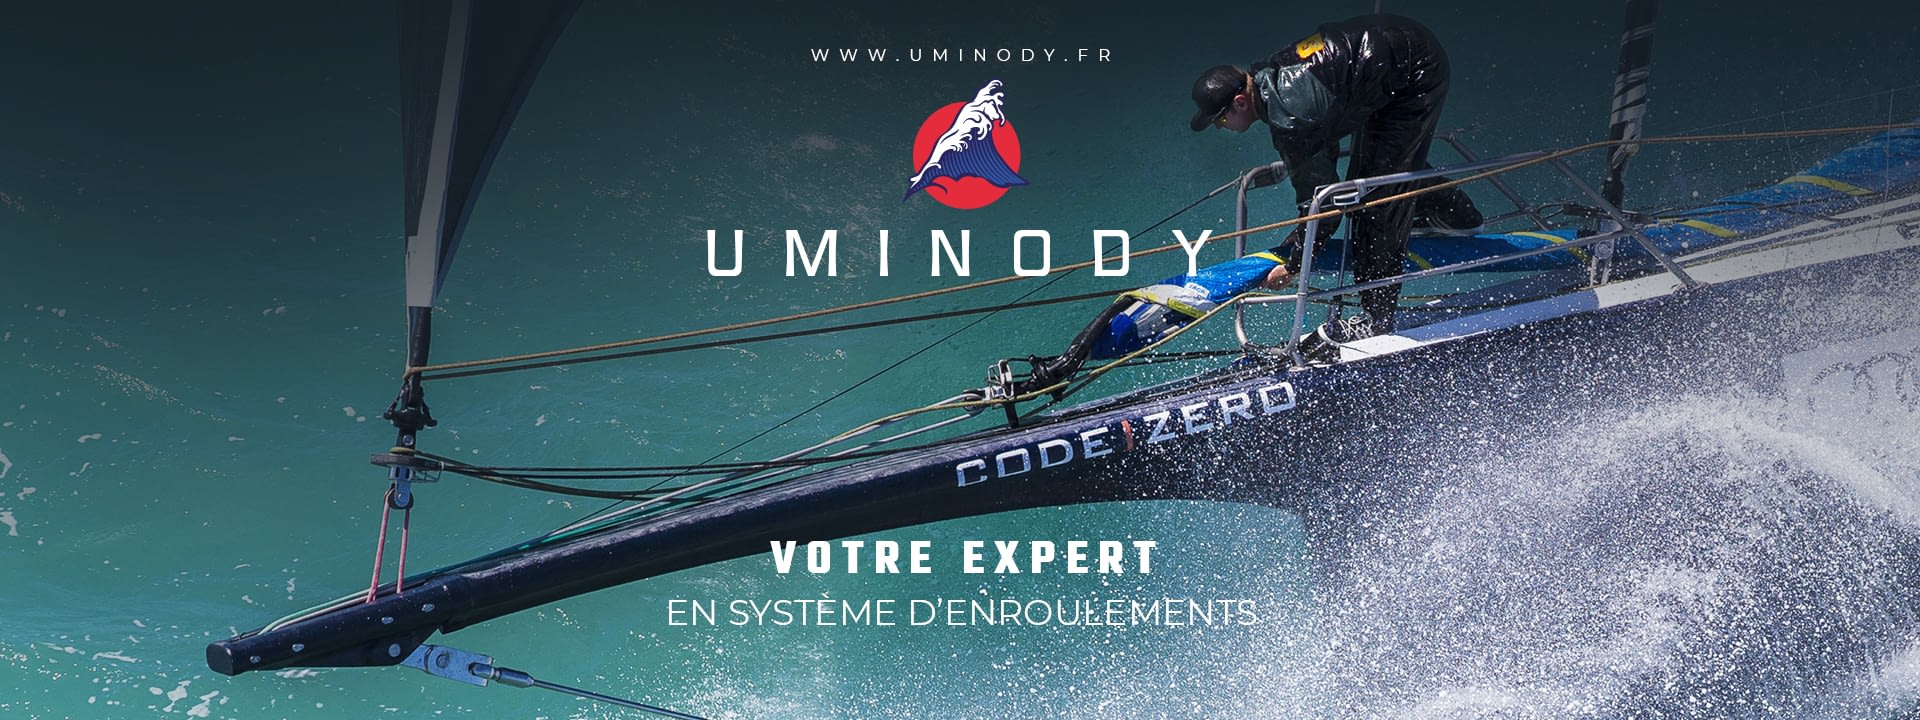 Uminody - Votre Expert en Système d'Enroulement